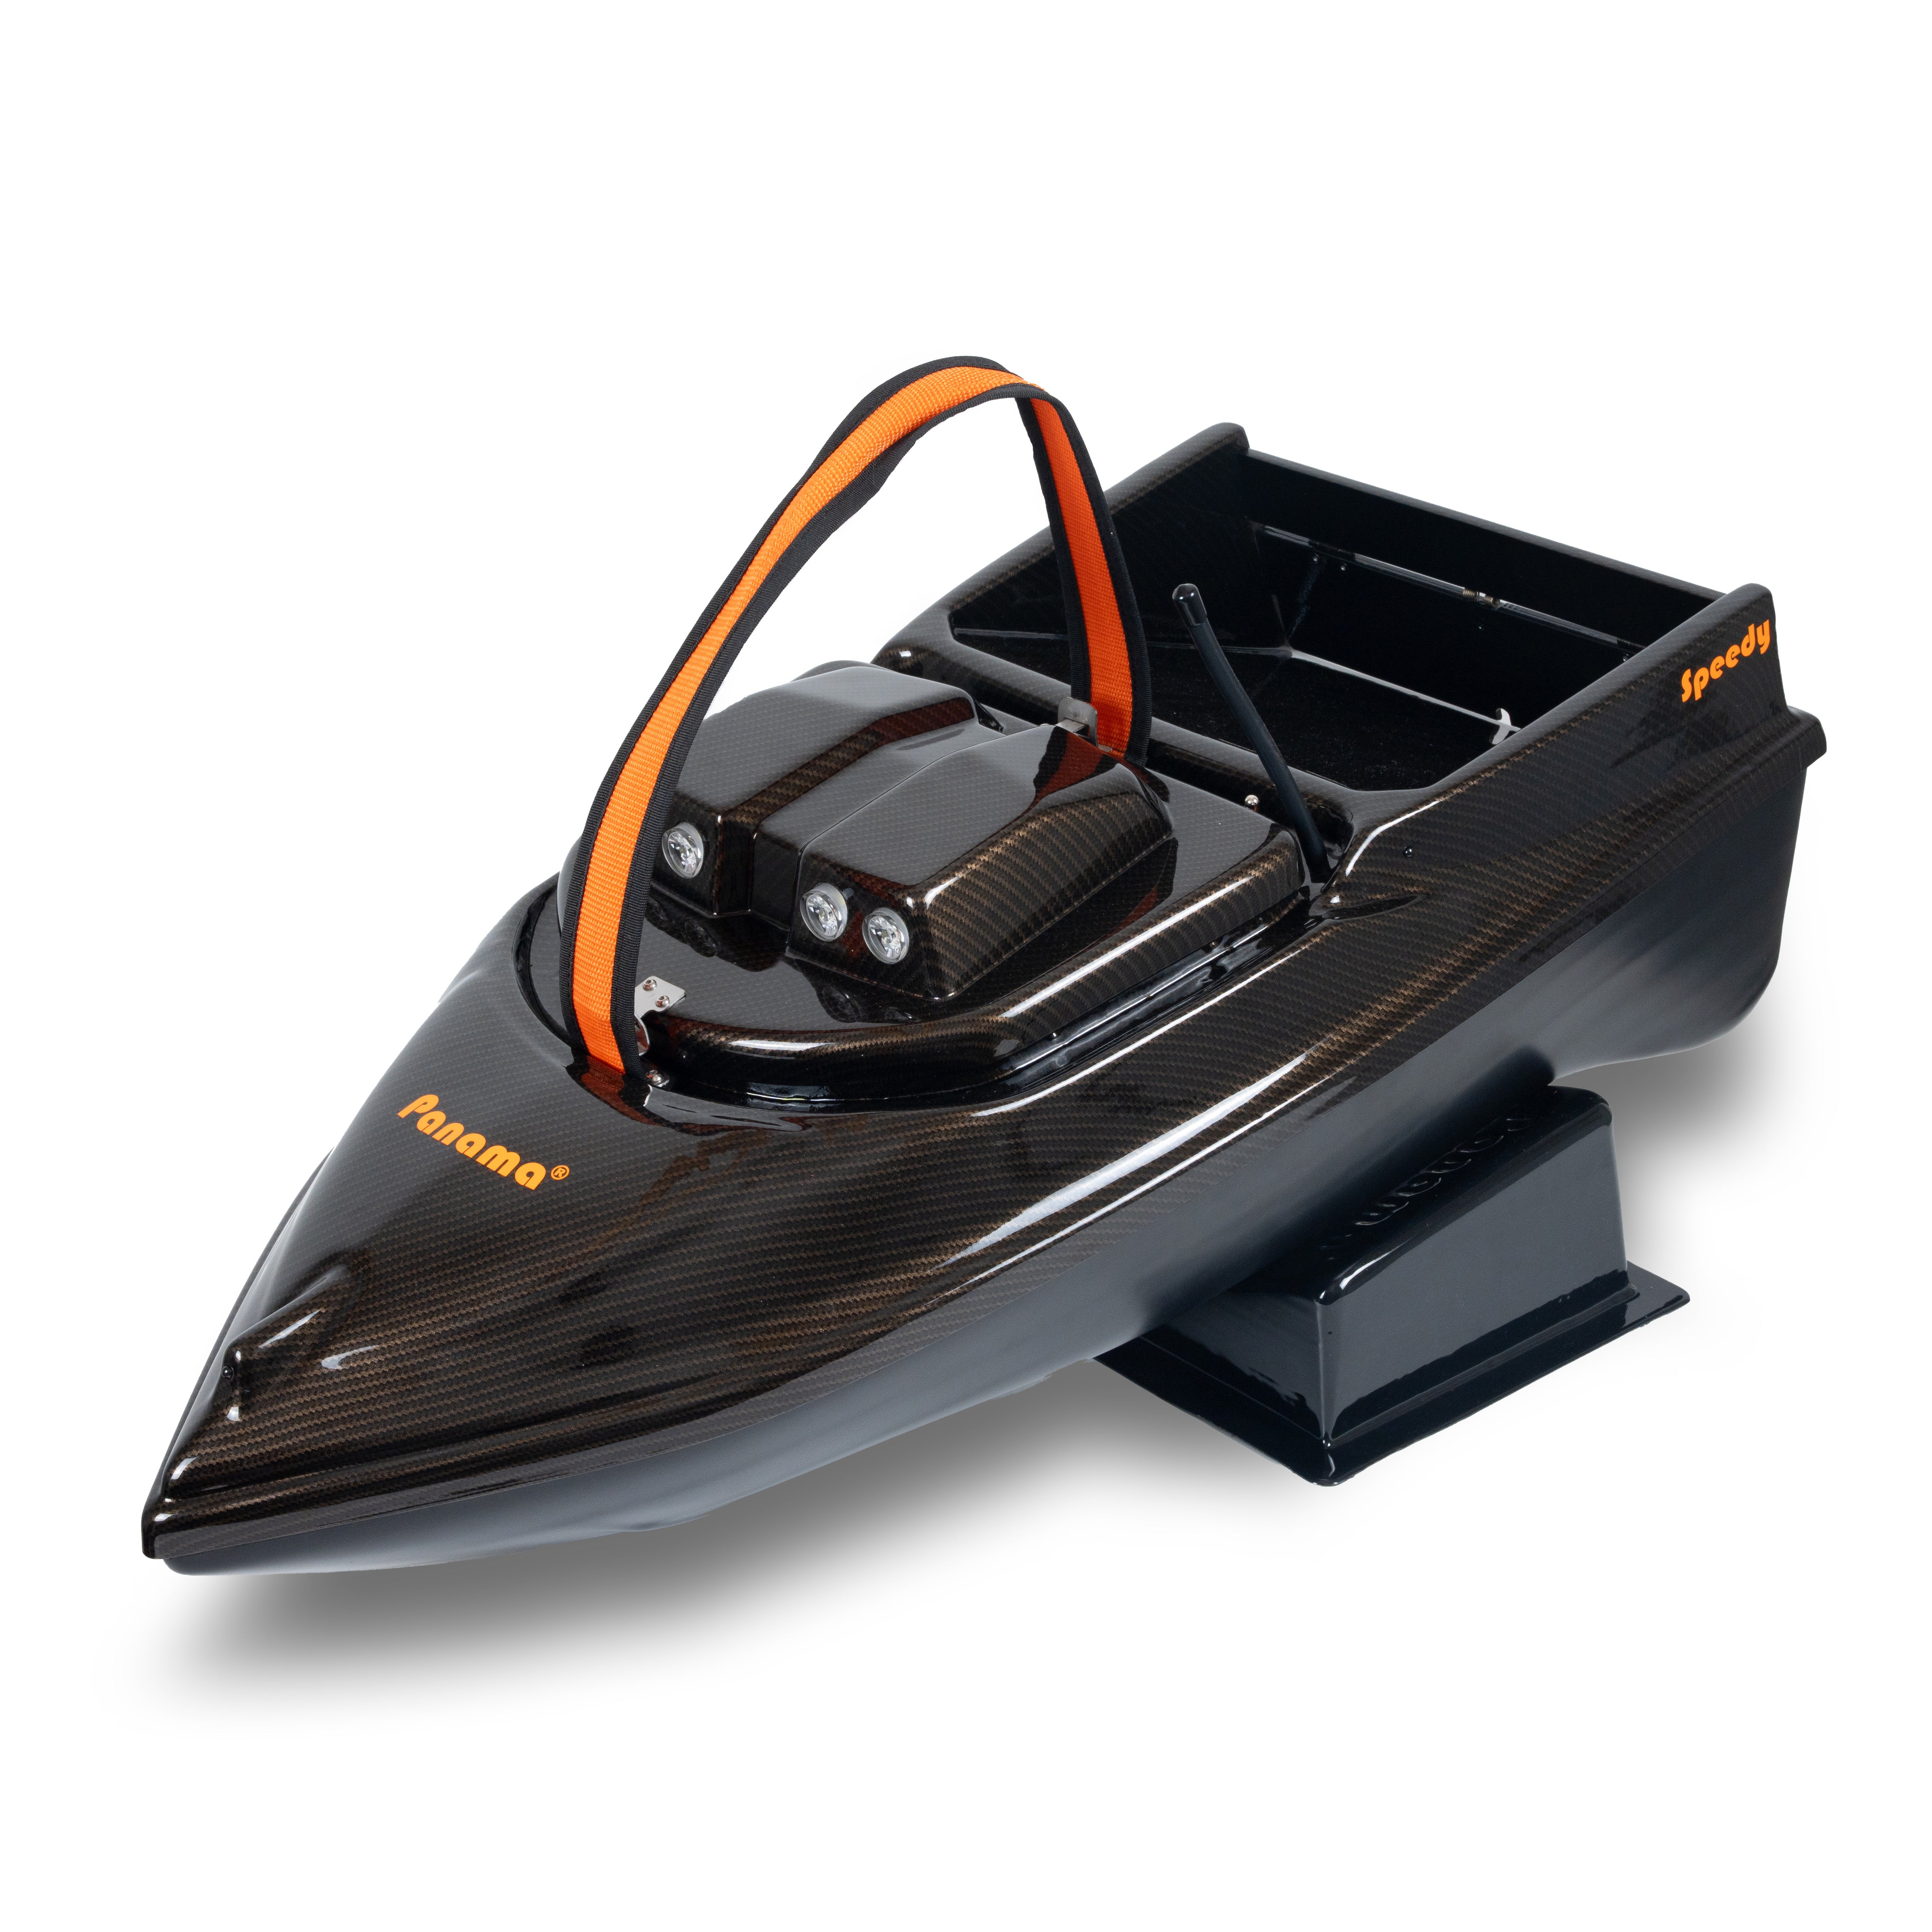 Panama zavážecí loďky Speedy + Autopilot + Echolot + Reflektor + Light modul